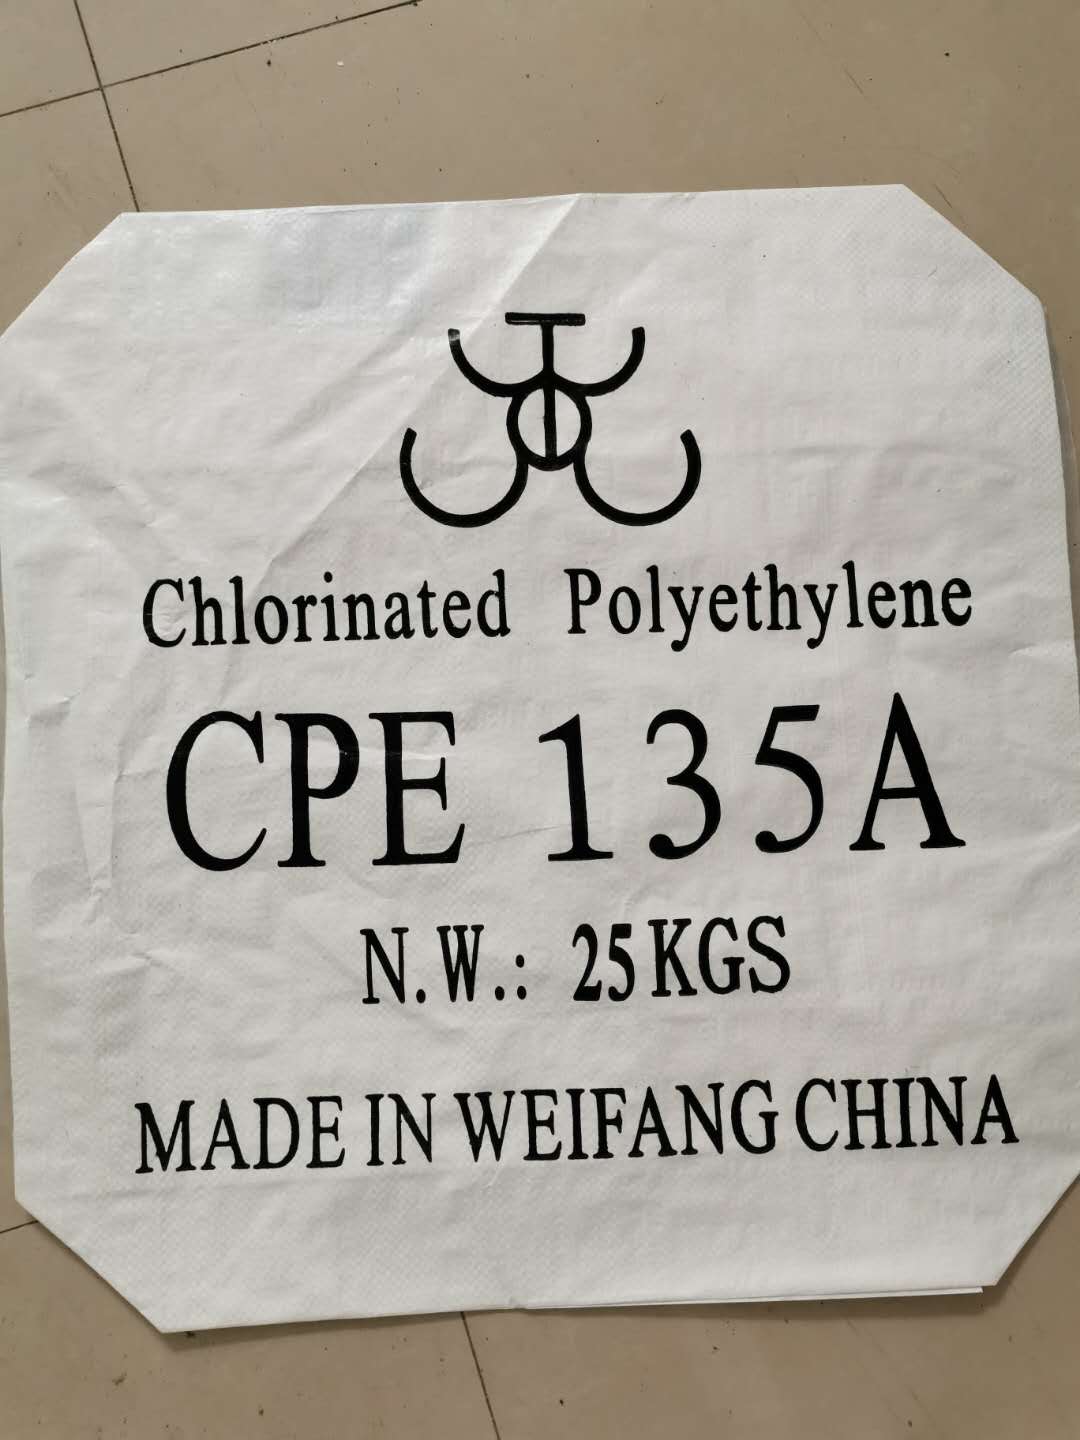 Mənə bildirin: CPE/xlorlu polietilen nədir?